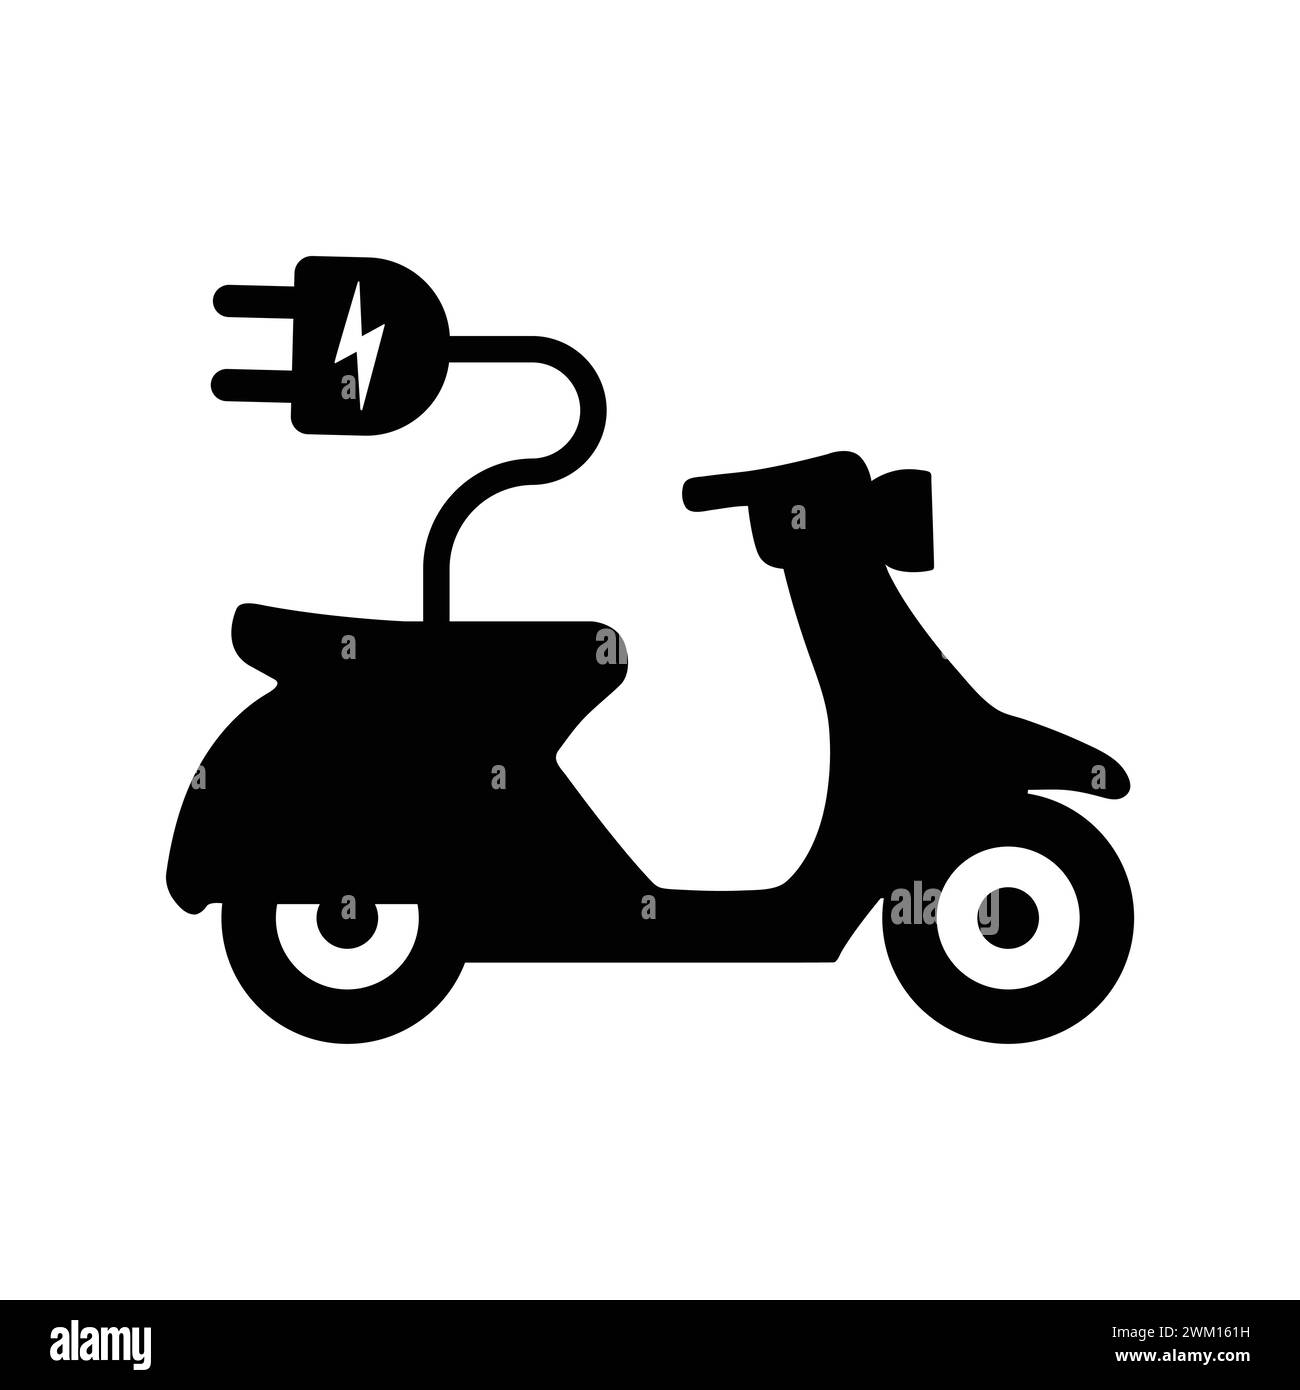 Icona Scooter elettrico. Motocicletta elettrica con spina. Illustrazione vettoriale del pittogramma della motocicletta. Modello ciclomotore o moto trasporto ecologico Illustrazione Vettoriale